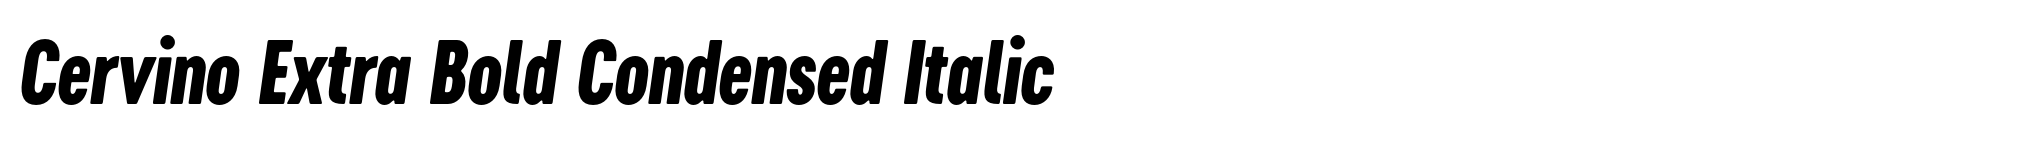 Cervino Extra Bold Condensed Italic image